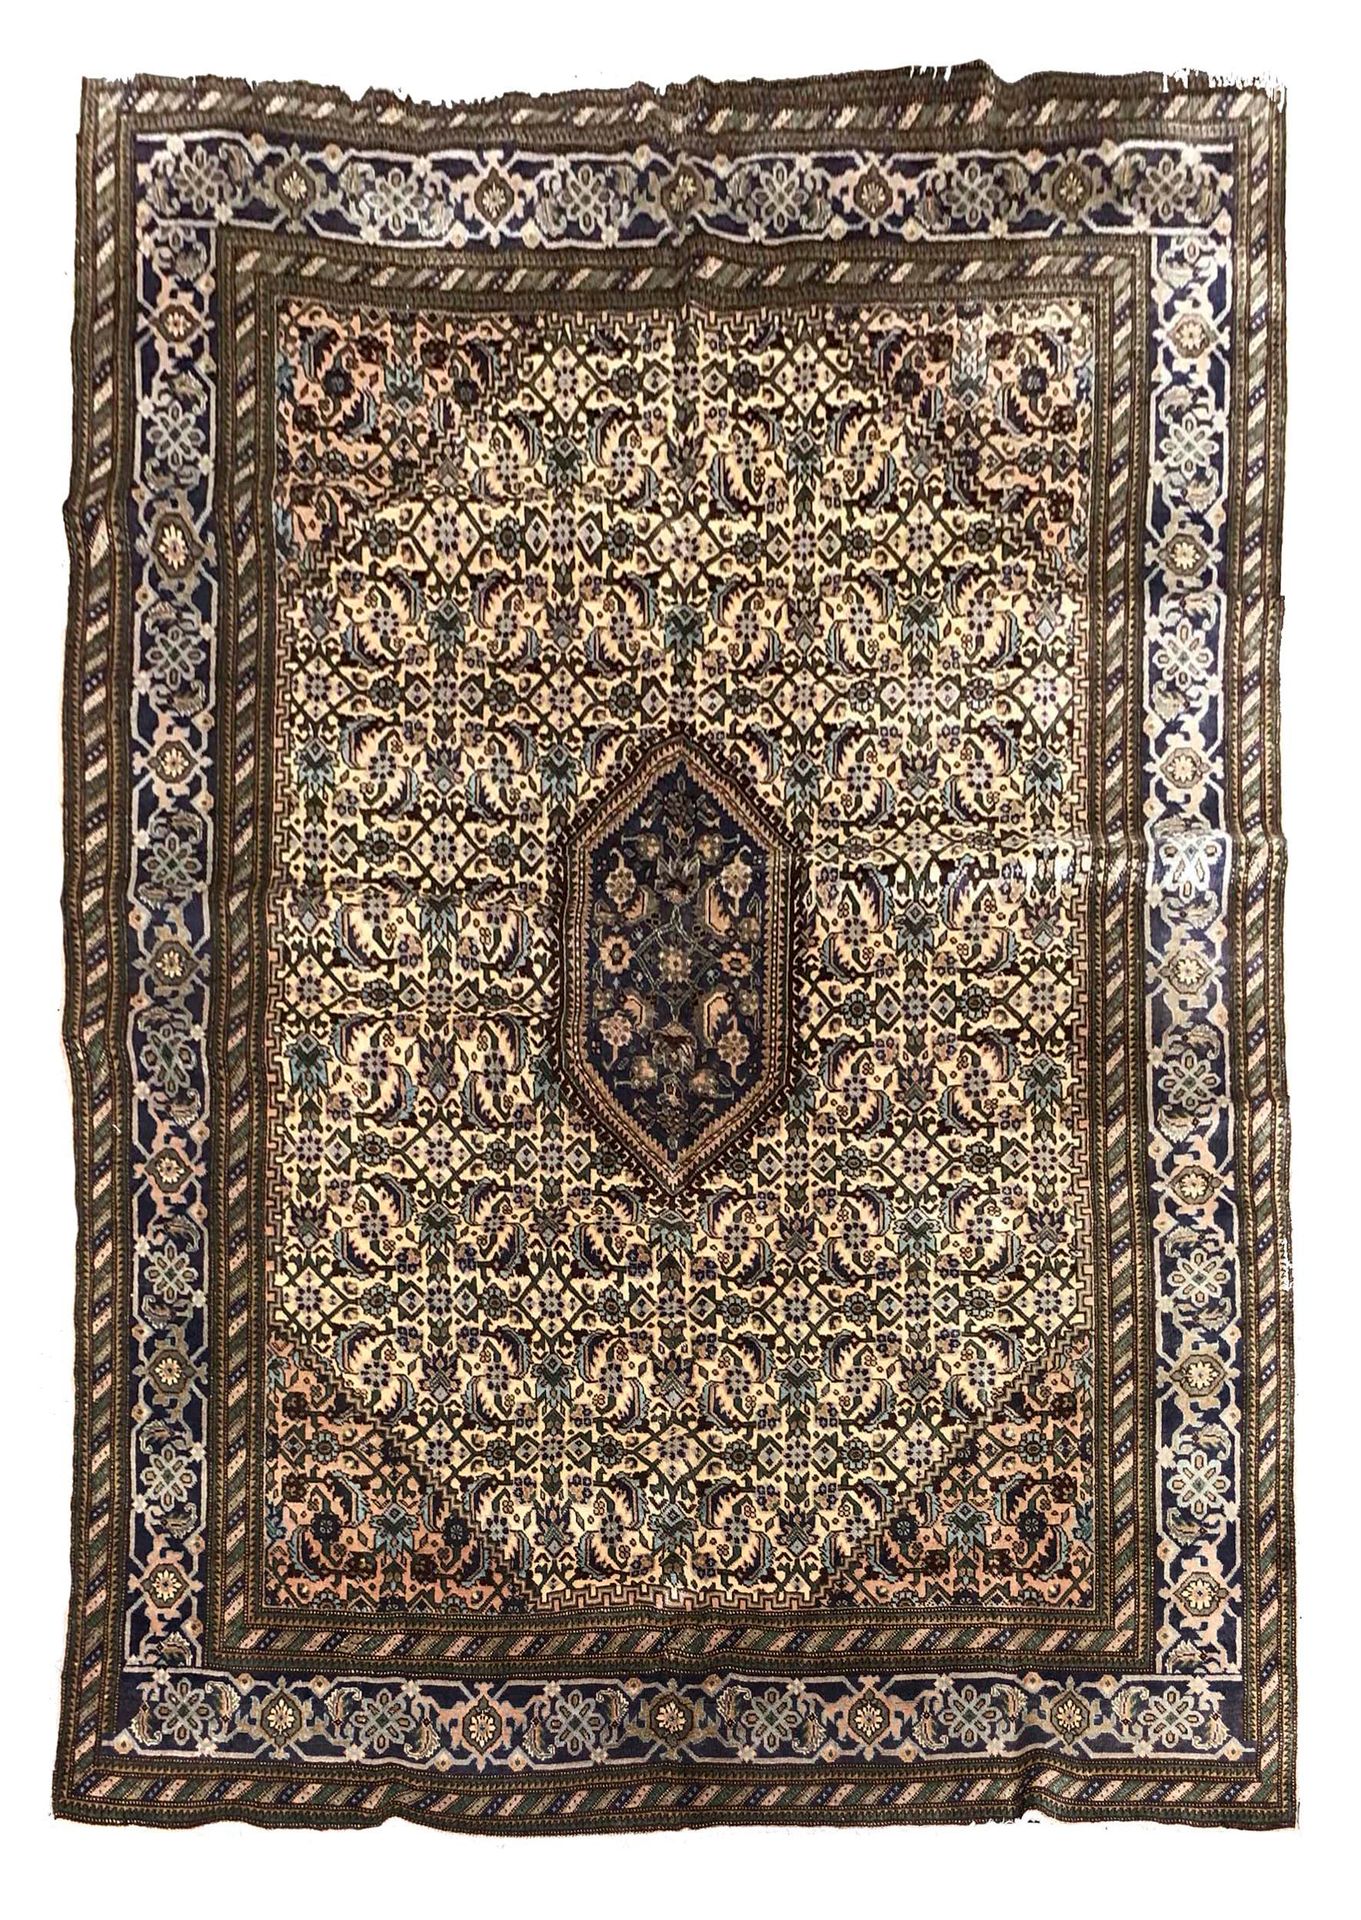 Null Tappeto MÉCHKINE (Iran), metà XX secolo

Dimensioni: 311 x 228 cm.

Caratte&hellip;